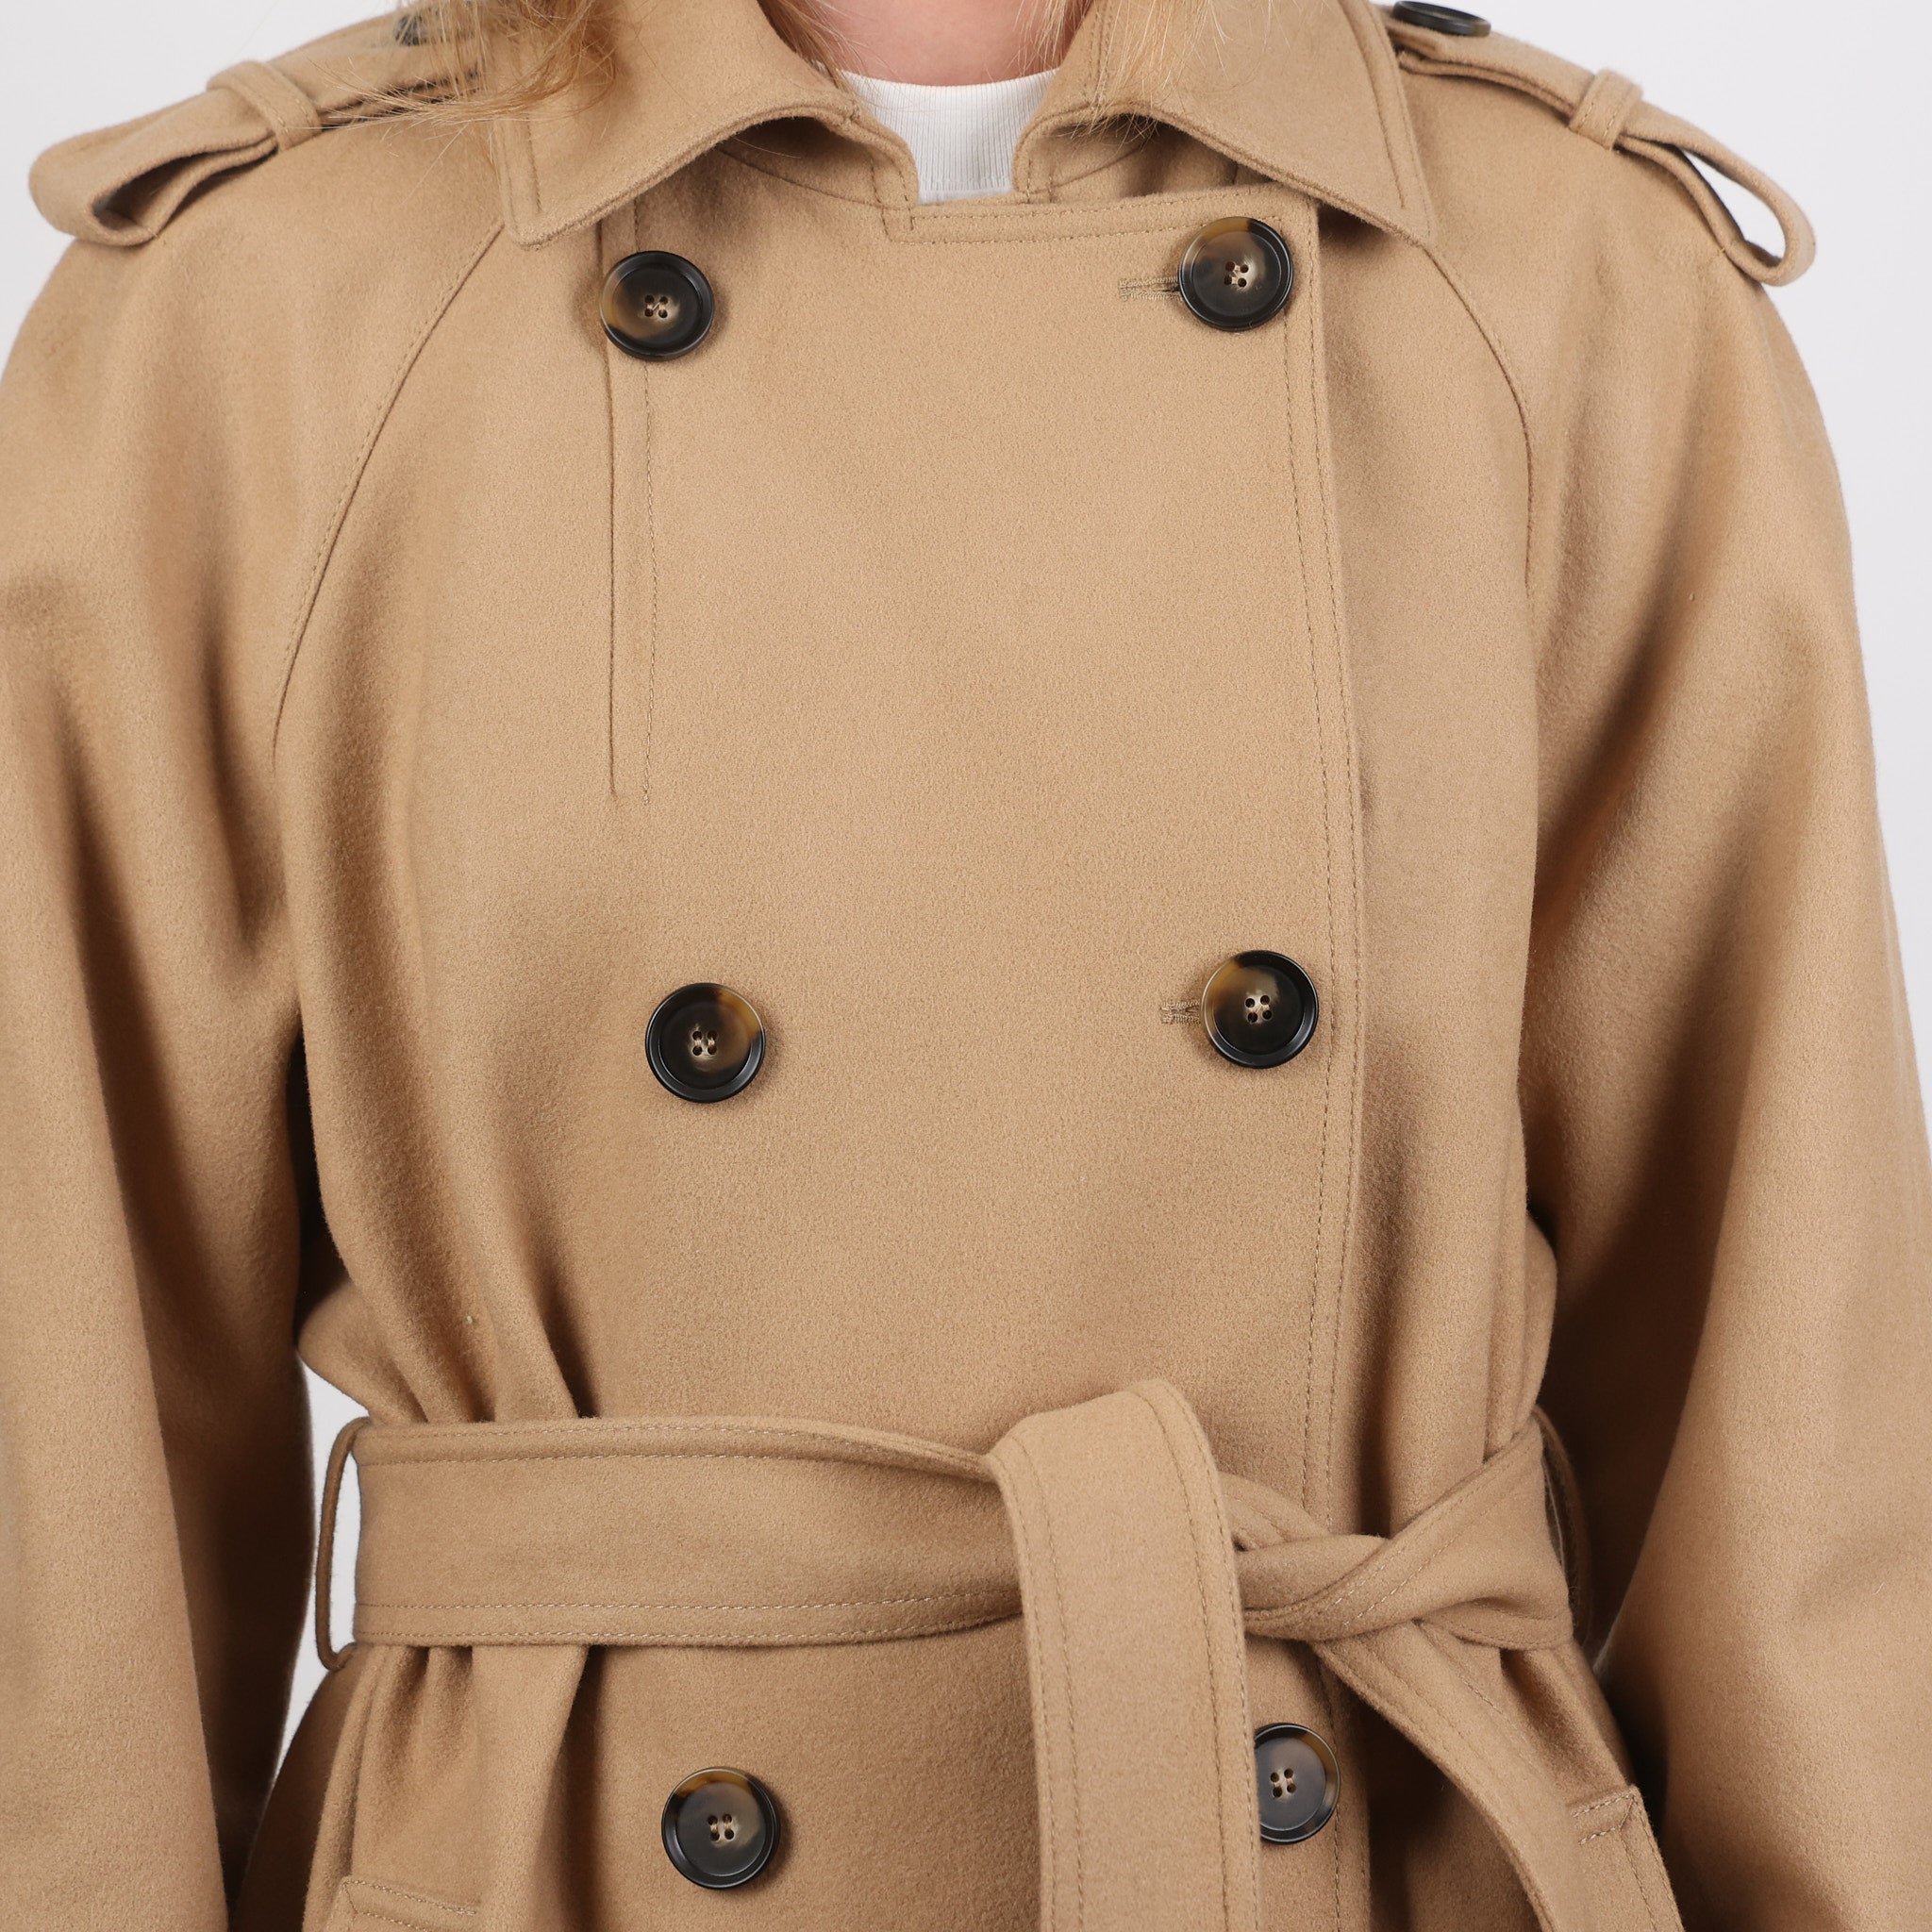 Coat, UK Size 16